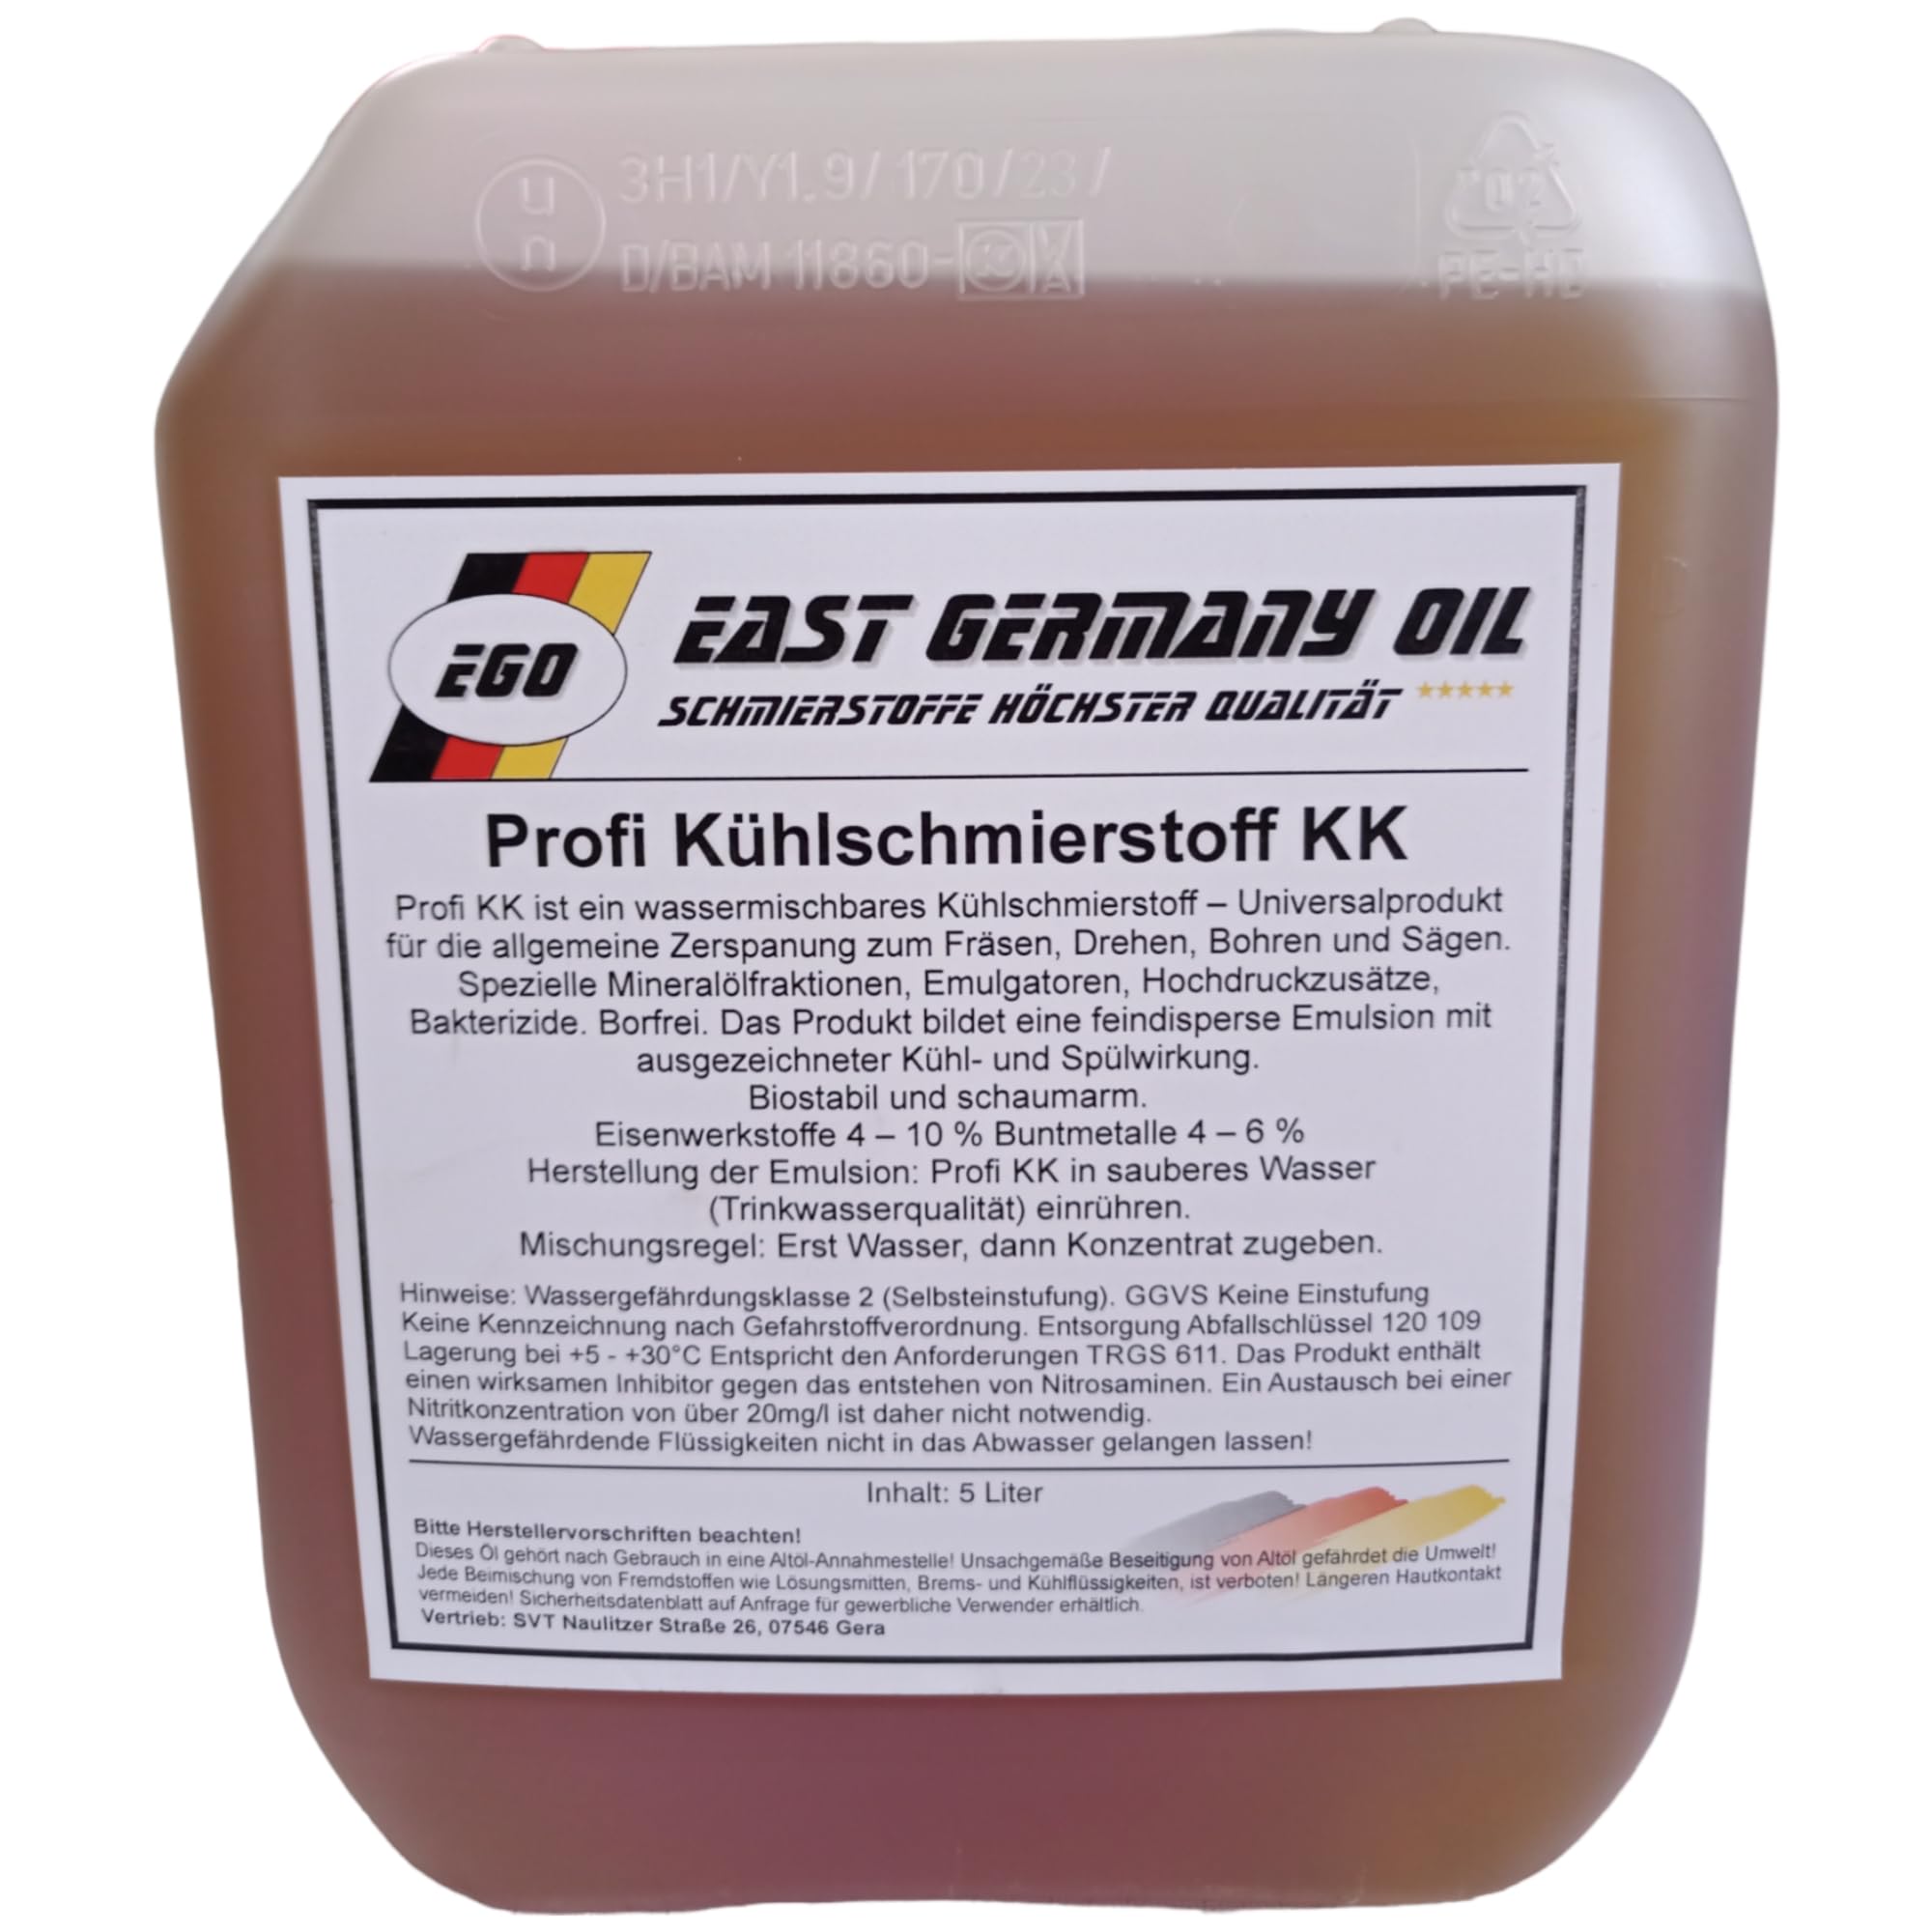 East Germany Oil Profi Kühlschmierstoff zum Fräsen, Drehen,Bohren,Sägen und Kühlen (Kanister 5 Liter)